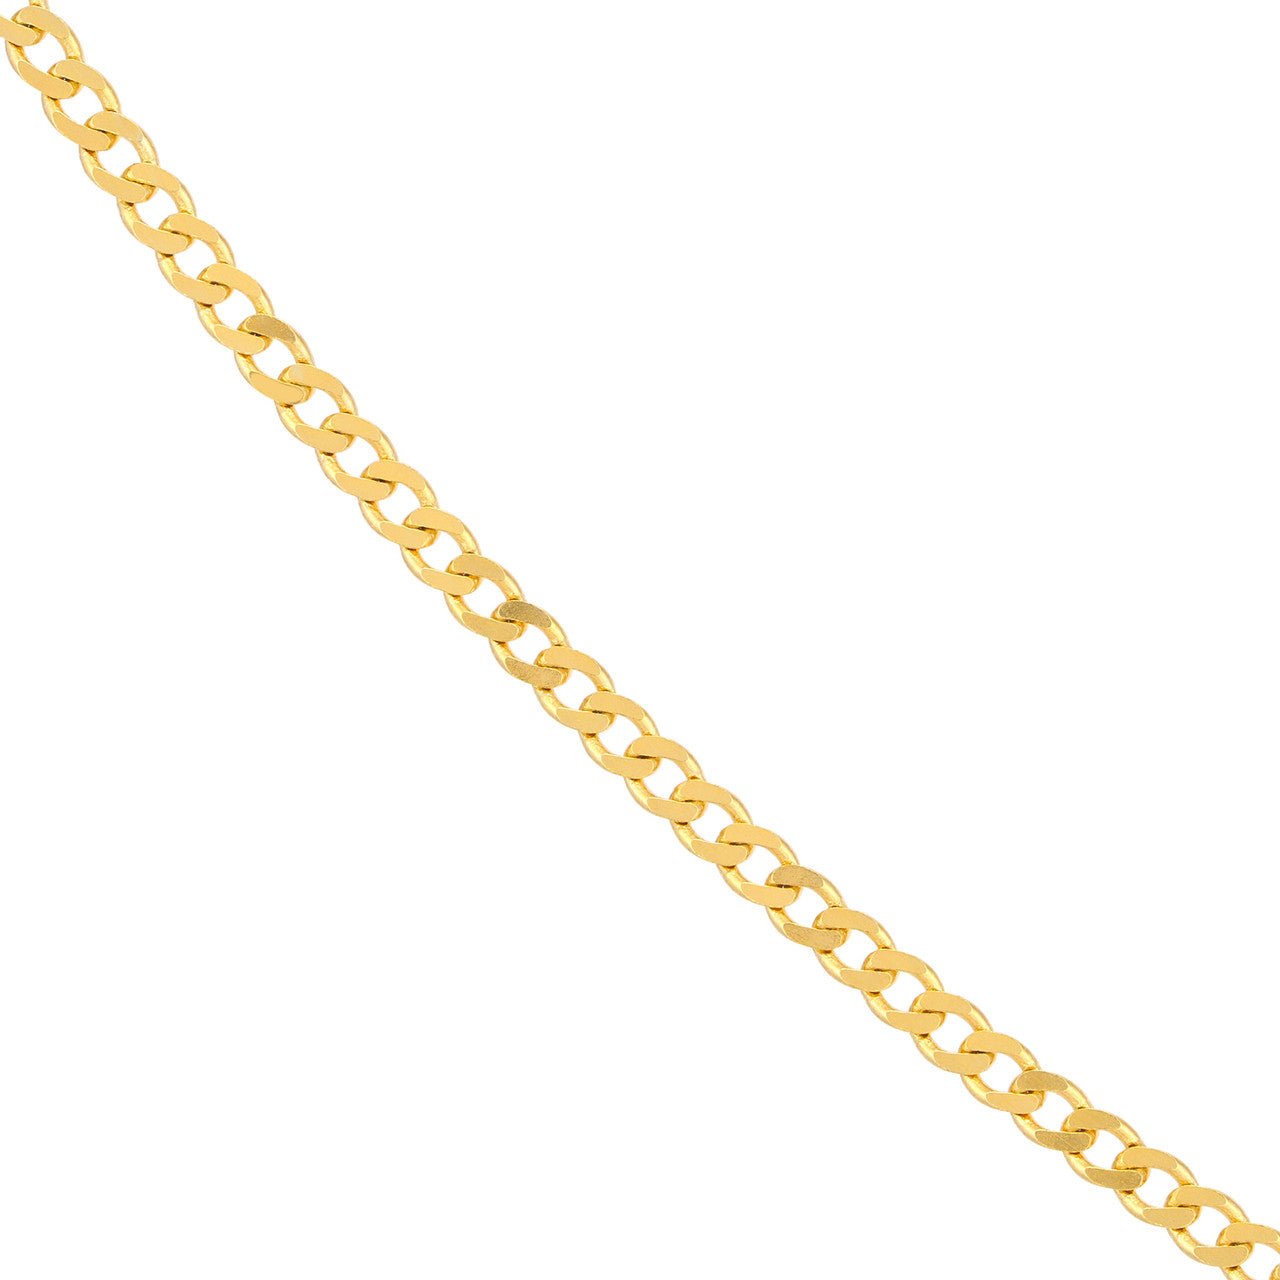 Gold Chains 16 Inches - Diamond Origin